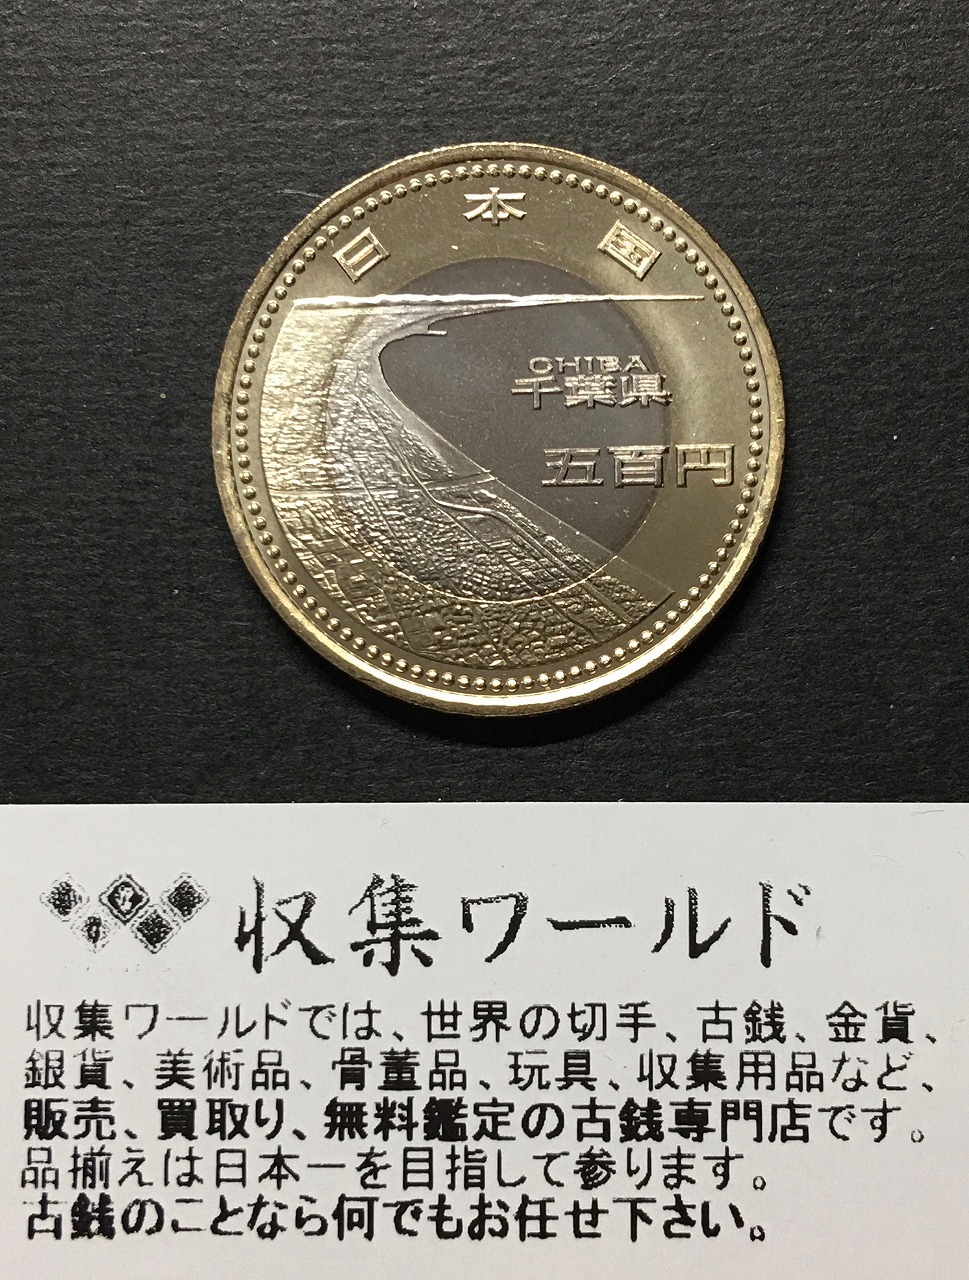 500円バイカラークラッド貨 地方自治法施行60周年記念貨幣 千葉県